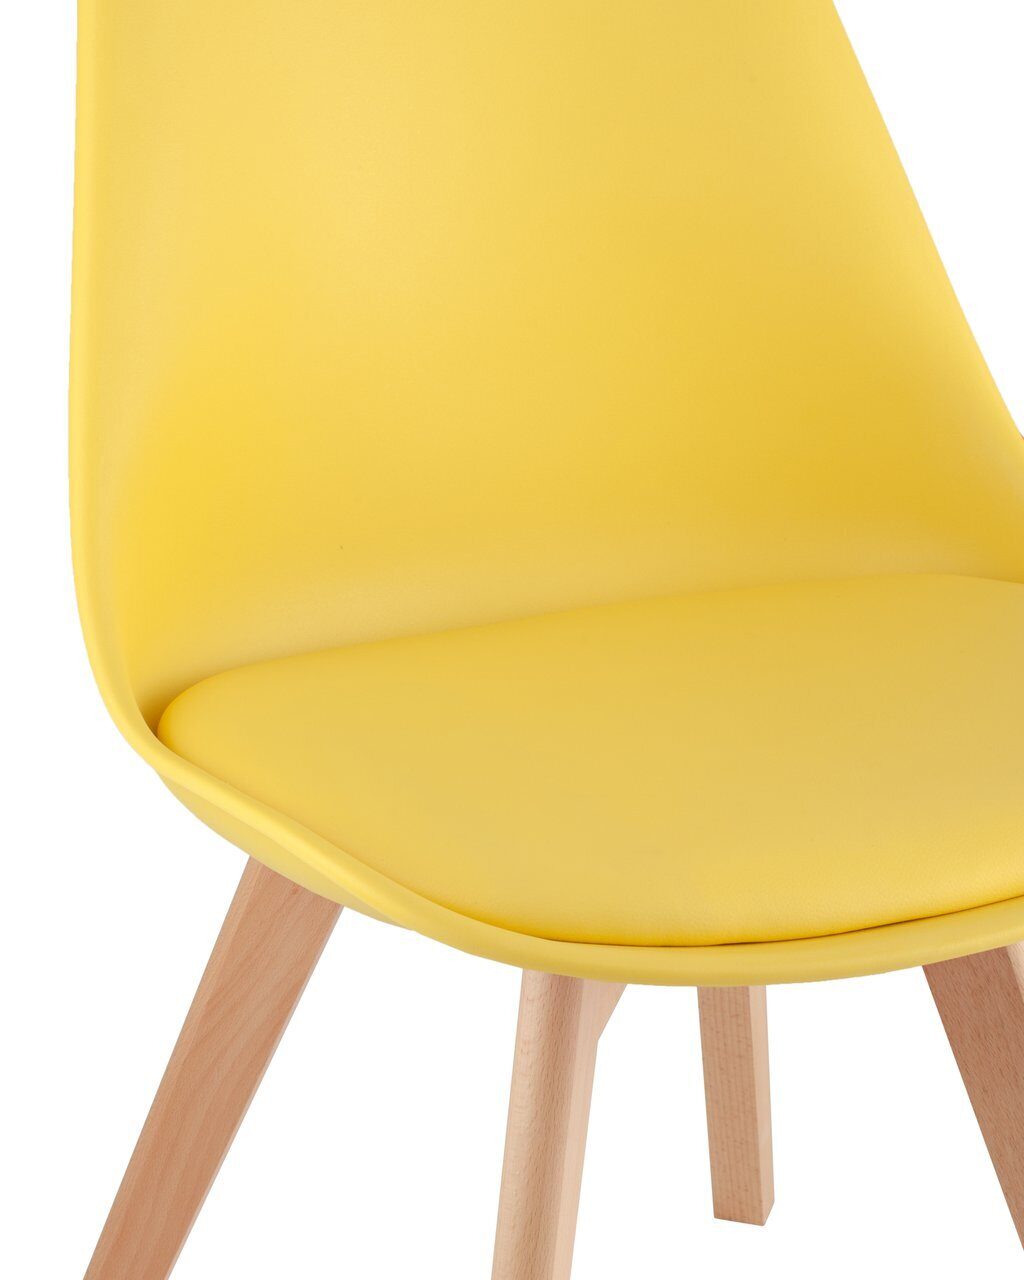 Желтый стул с кислым запахом